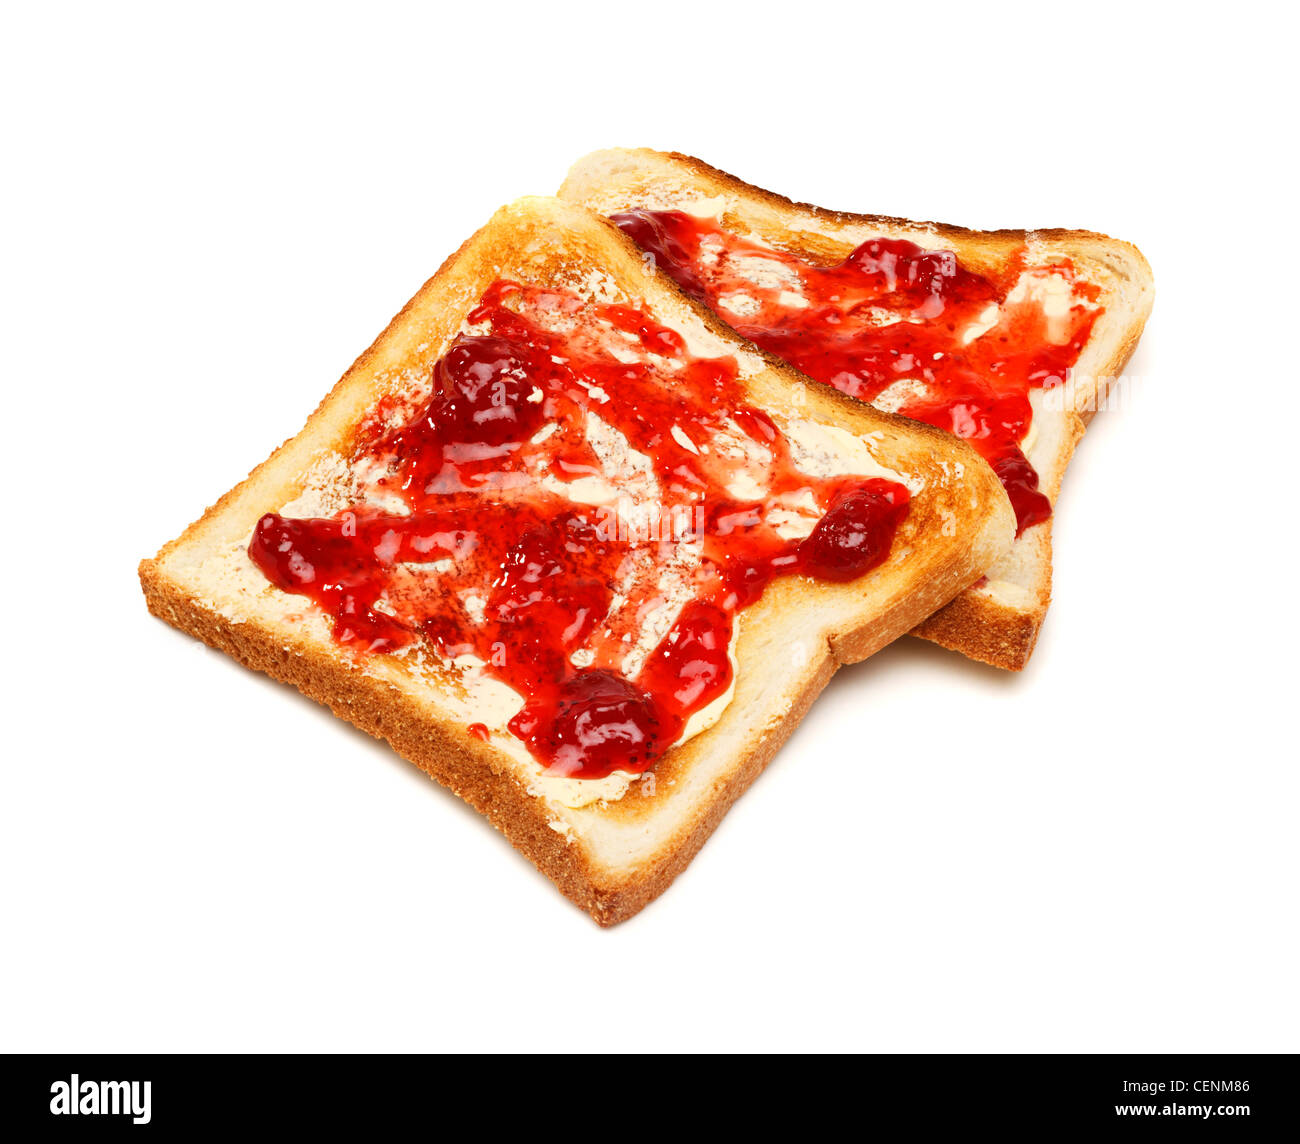 Toast and jam on white background Stock Photo